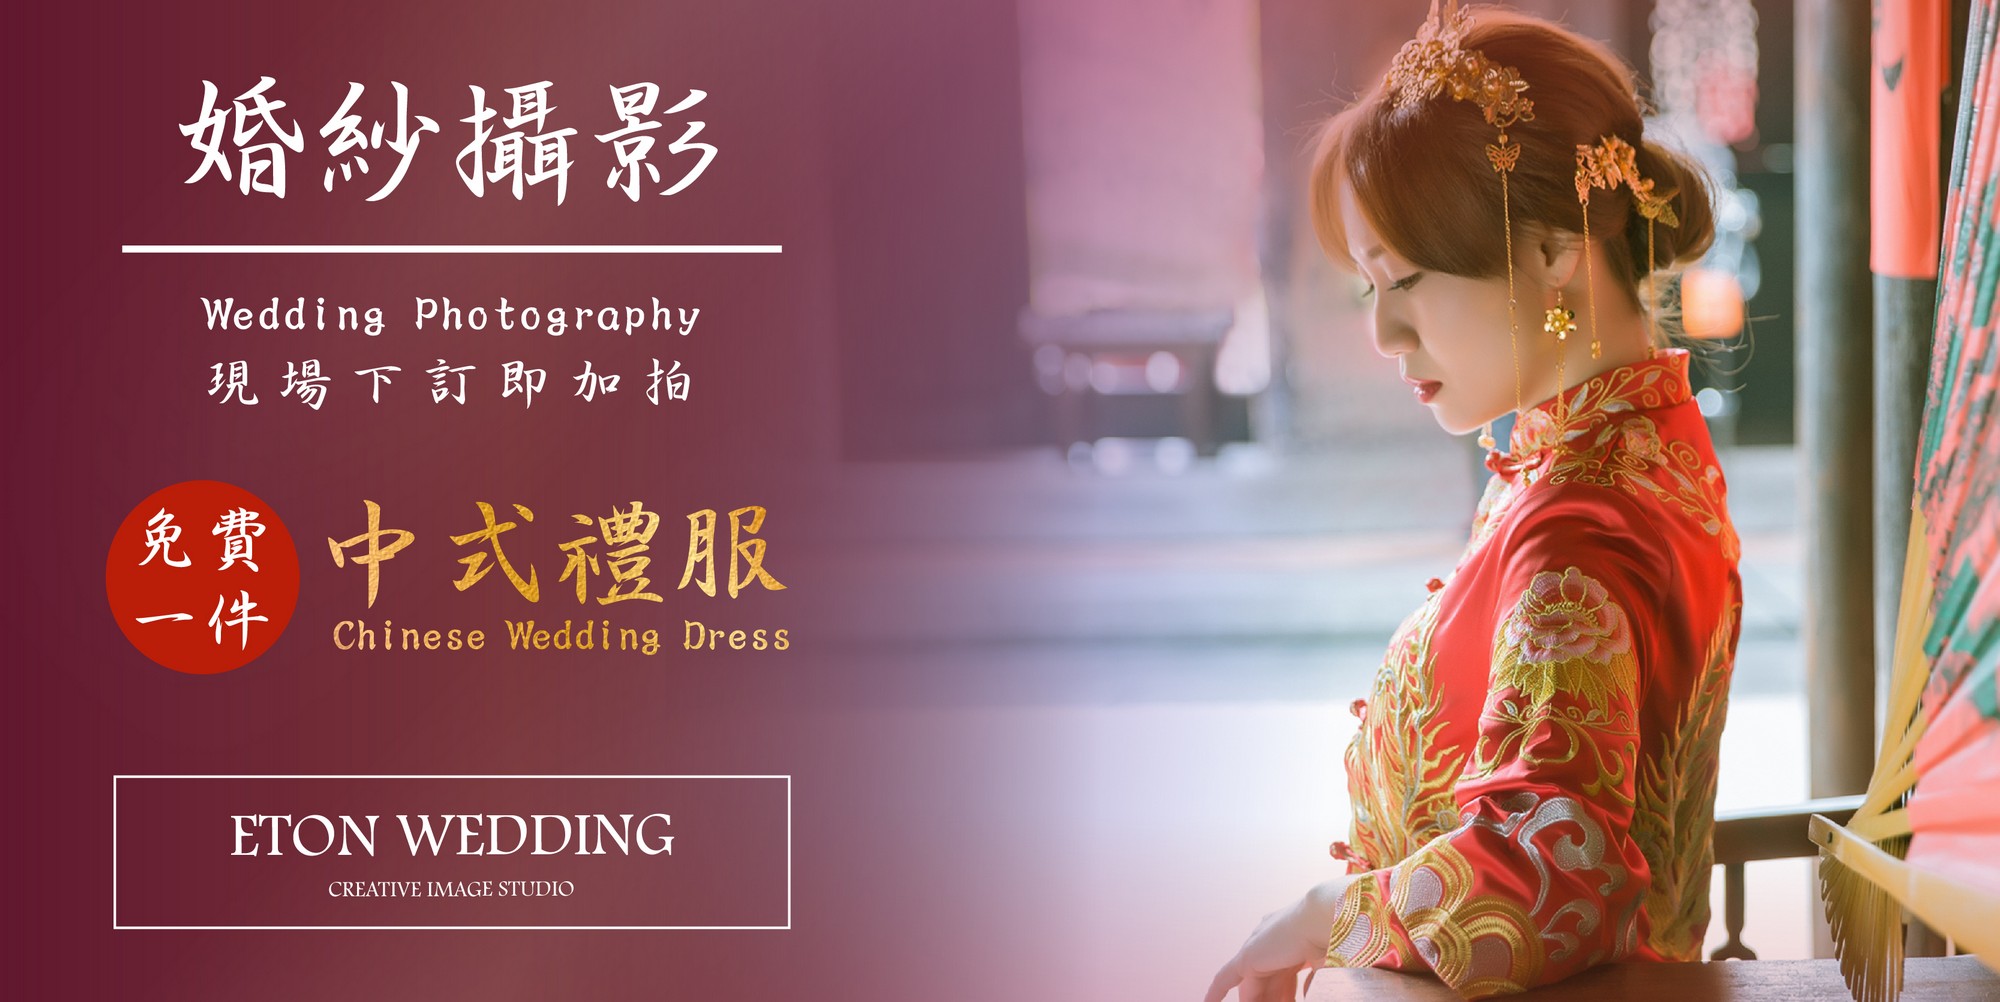 彰化中式婚紗,彰化 中式婚紗包套,中式婚紗照 彰化